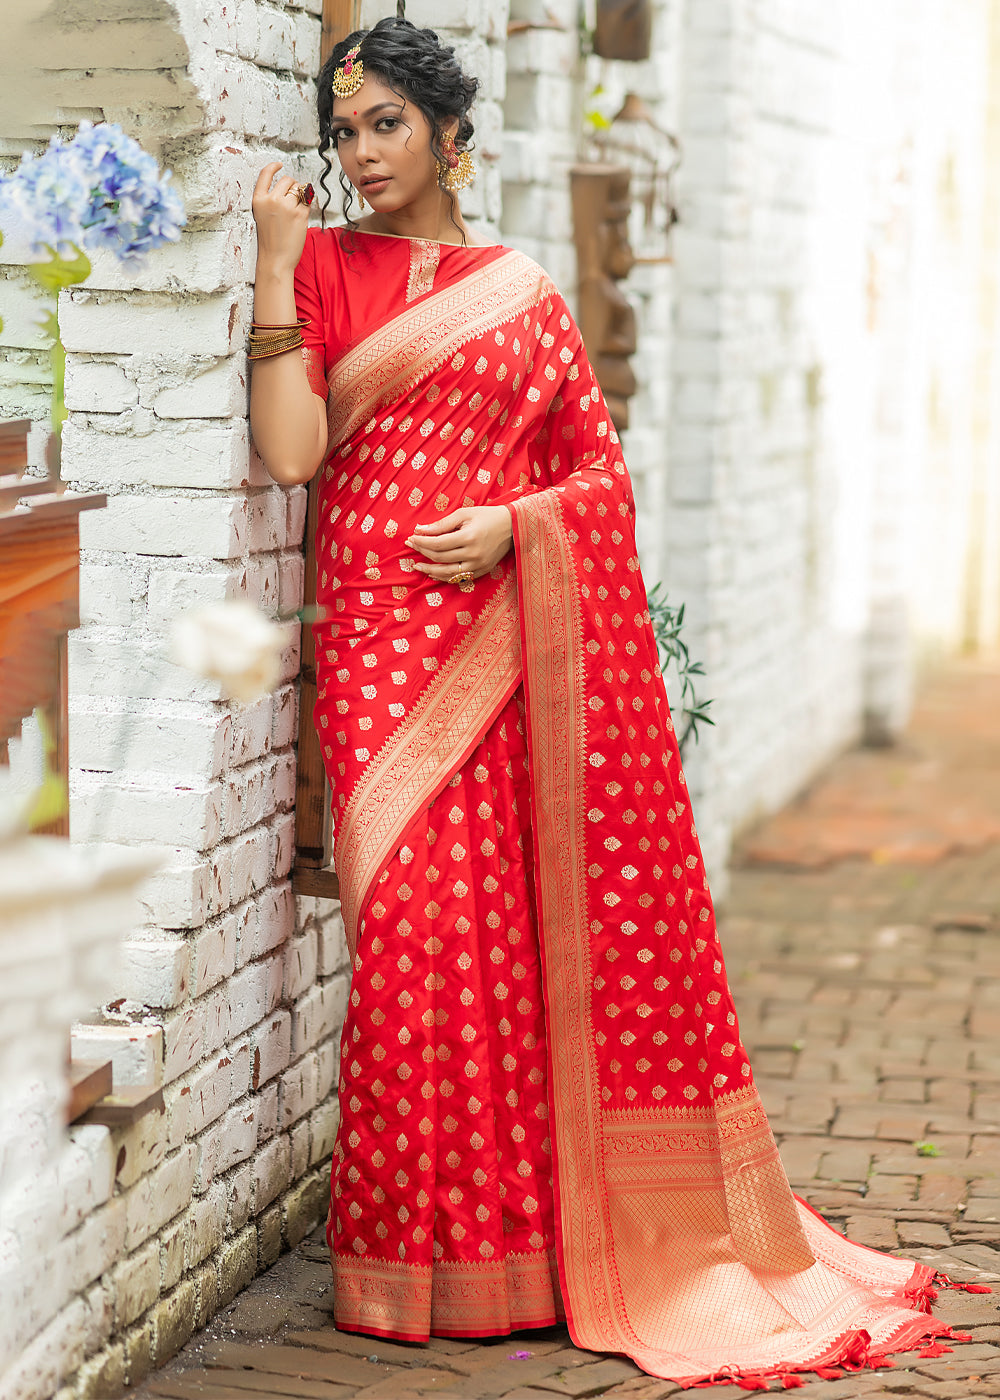 Red Soft Banarasi Silk SareeBuy Now Zaree Weave Saree At Best